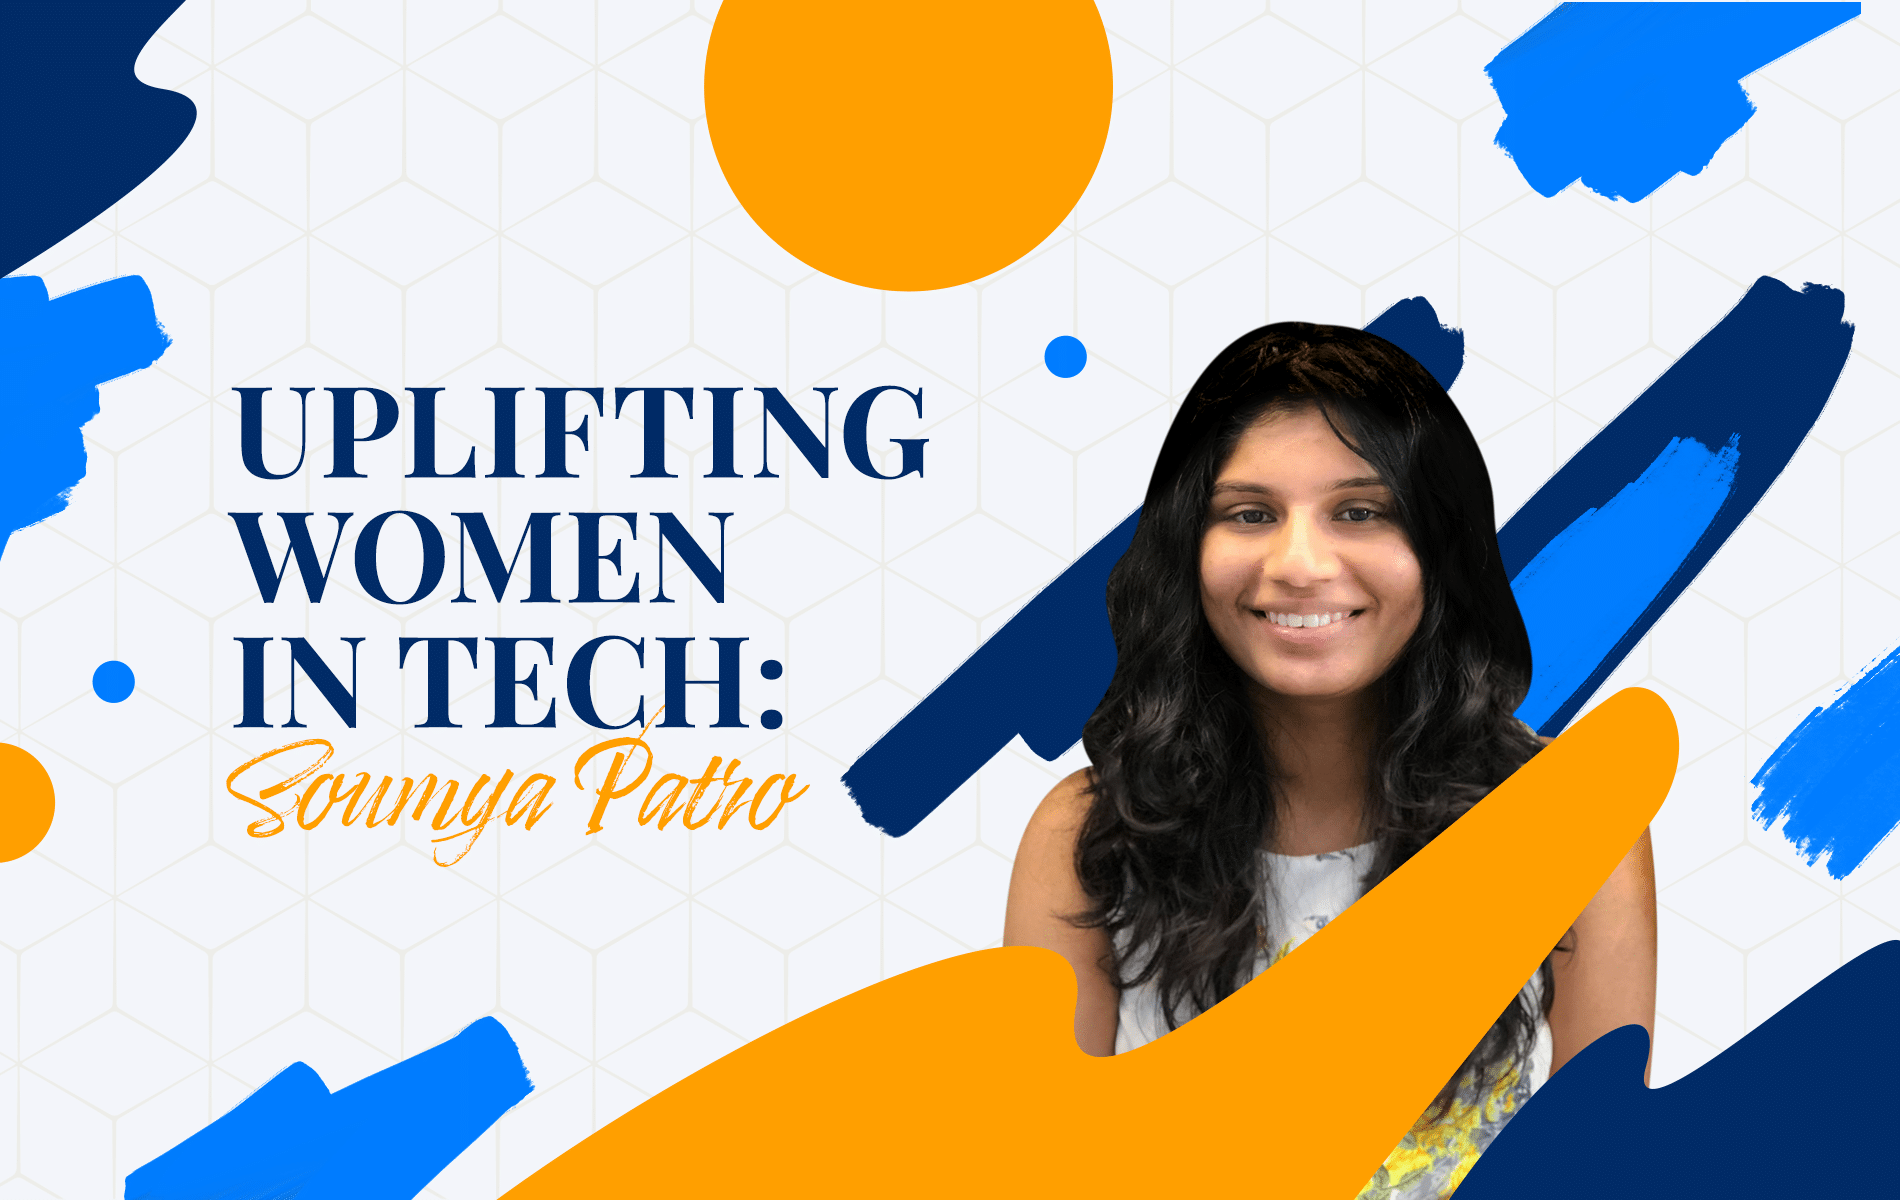 Uplifting Women in Tech: Soumya Patro